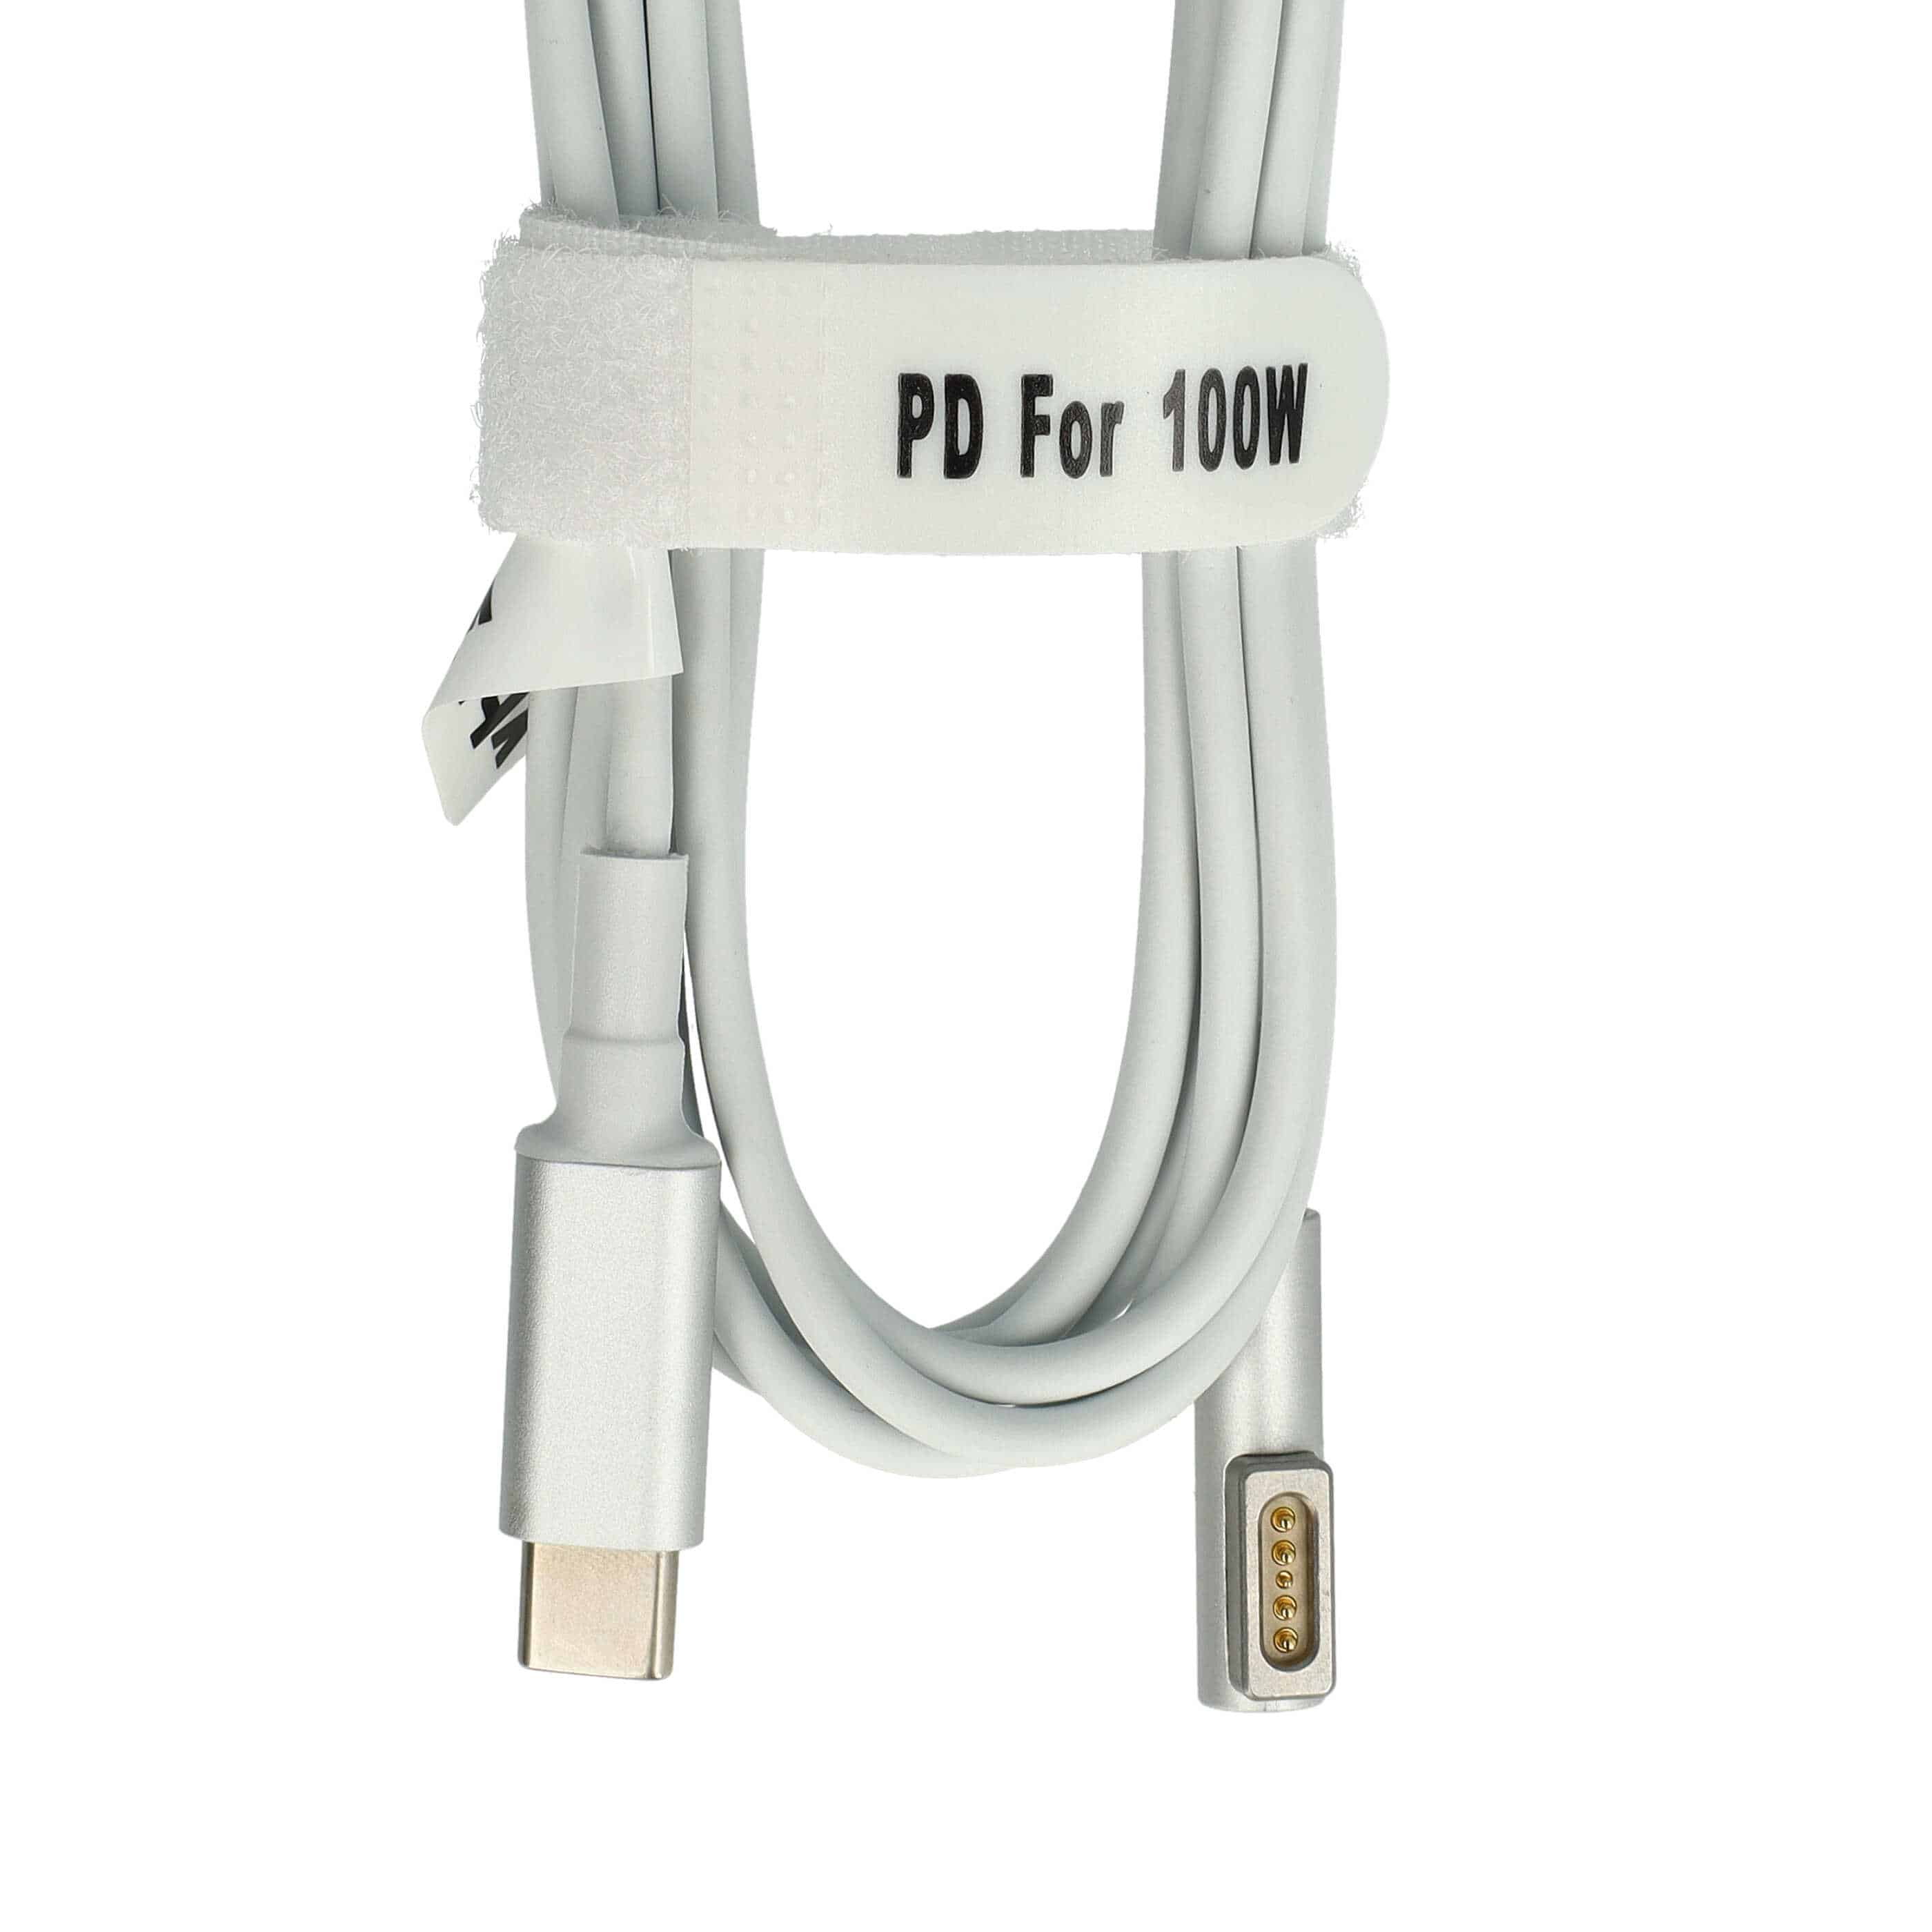 Câble USB C vers MagSafe 1 remplace Apple ADA-C2MS1 pour ordinateur Apple - 100 W, PVC